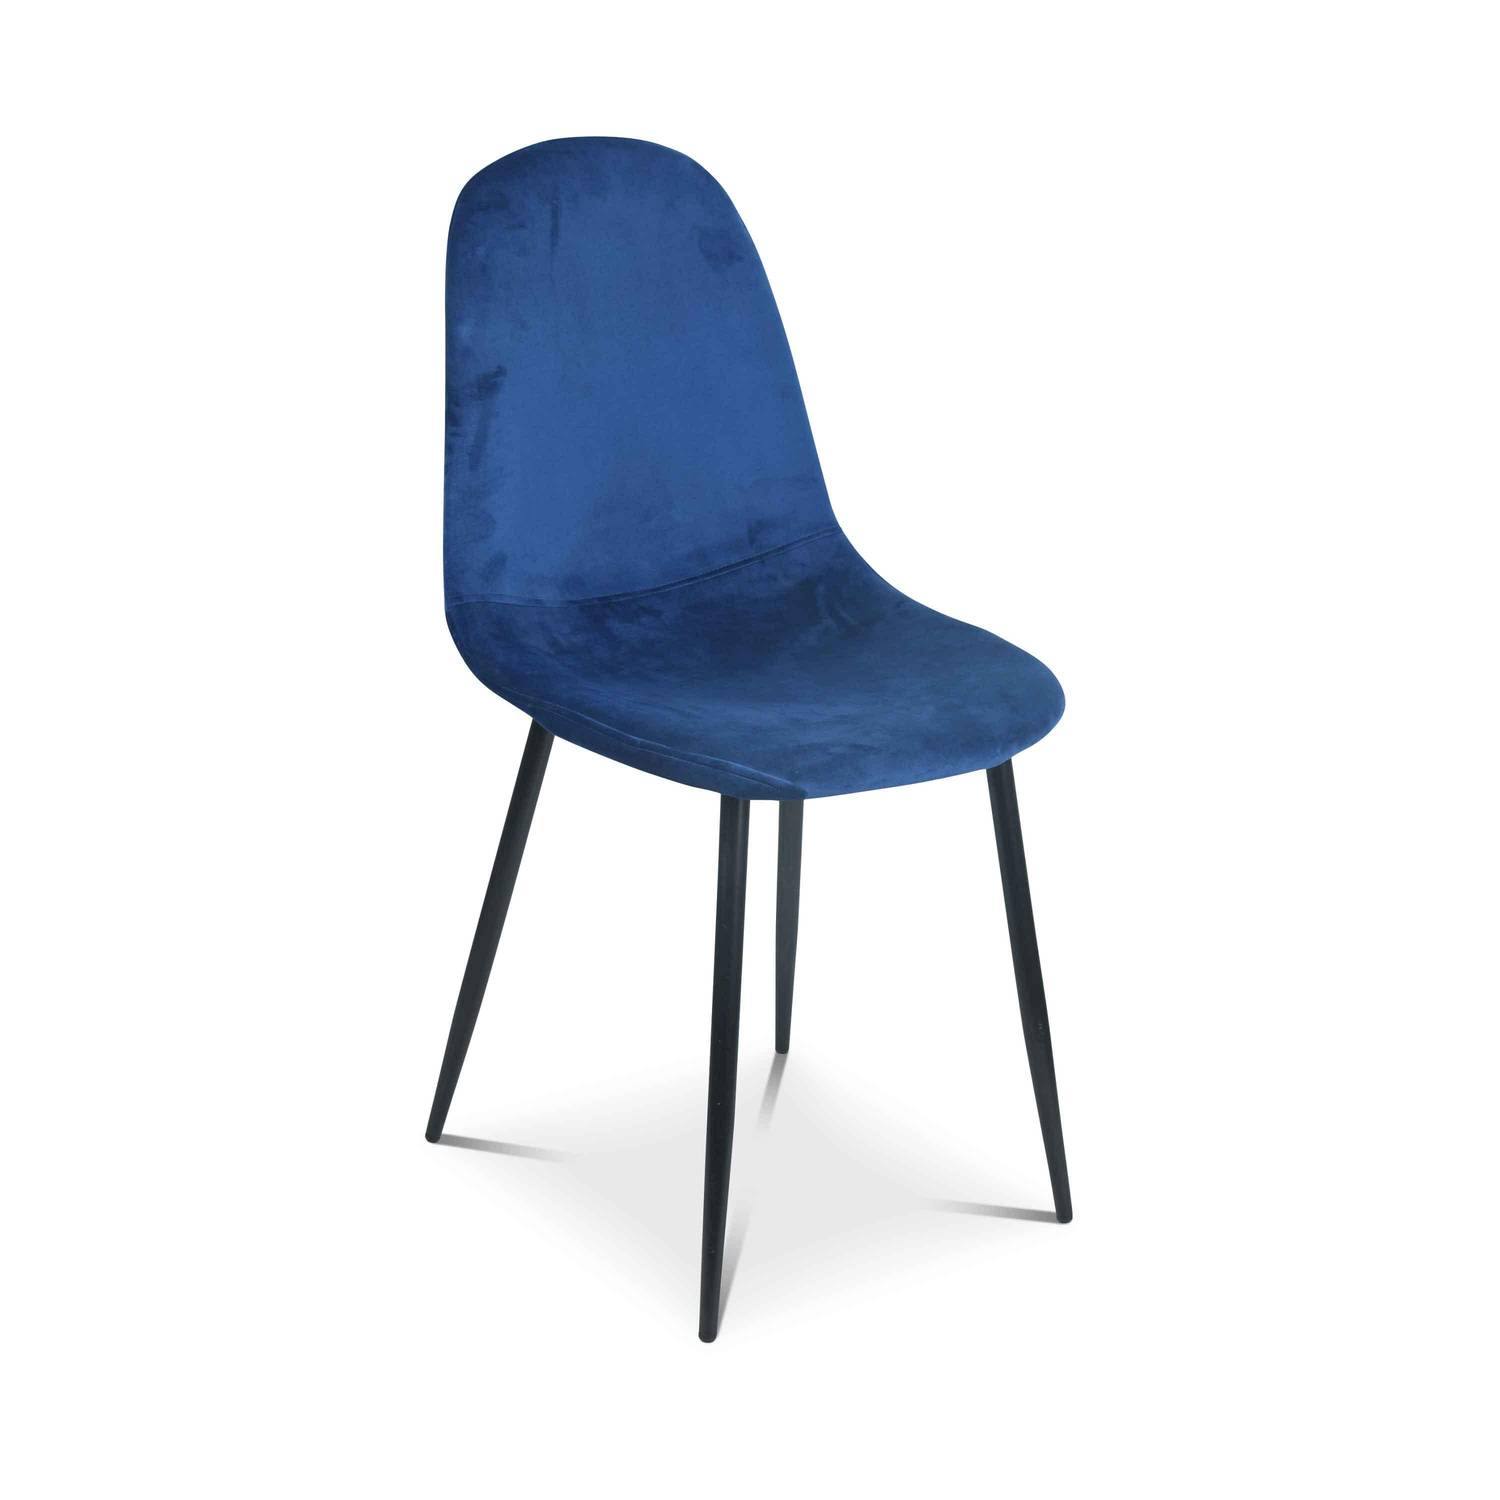 Set van 4 stoelen - Bombay - velours stoelen, metalen poten, vintage, comfortabel, design, stalen onderstel, B44xD53 x H88cmn - Blauw Photo4